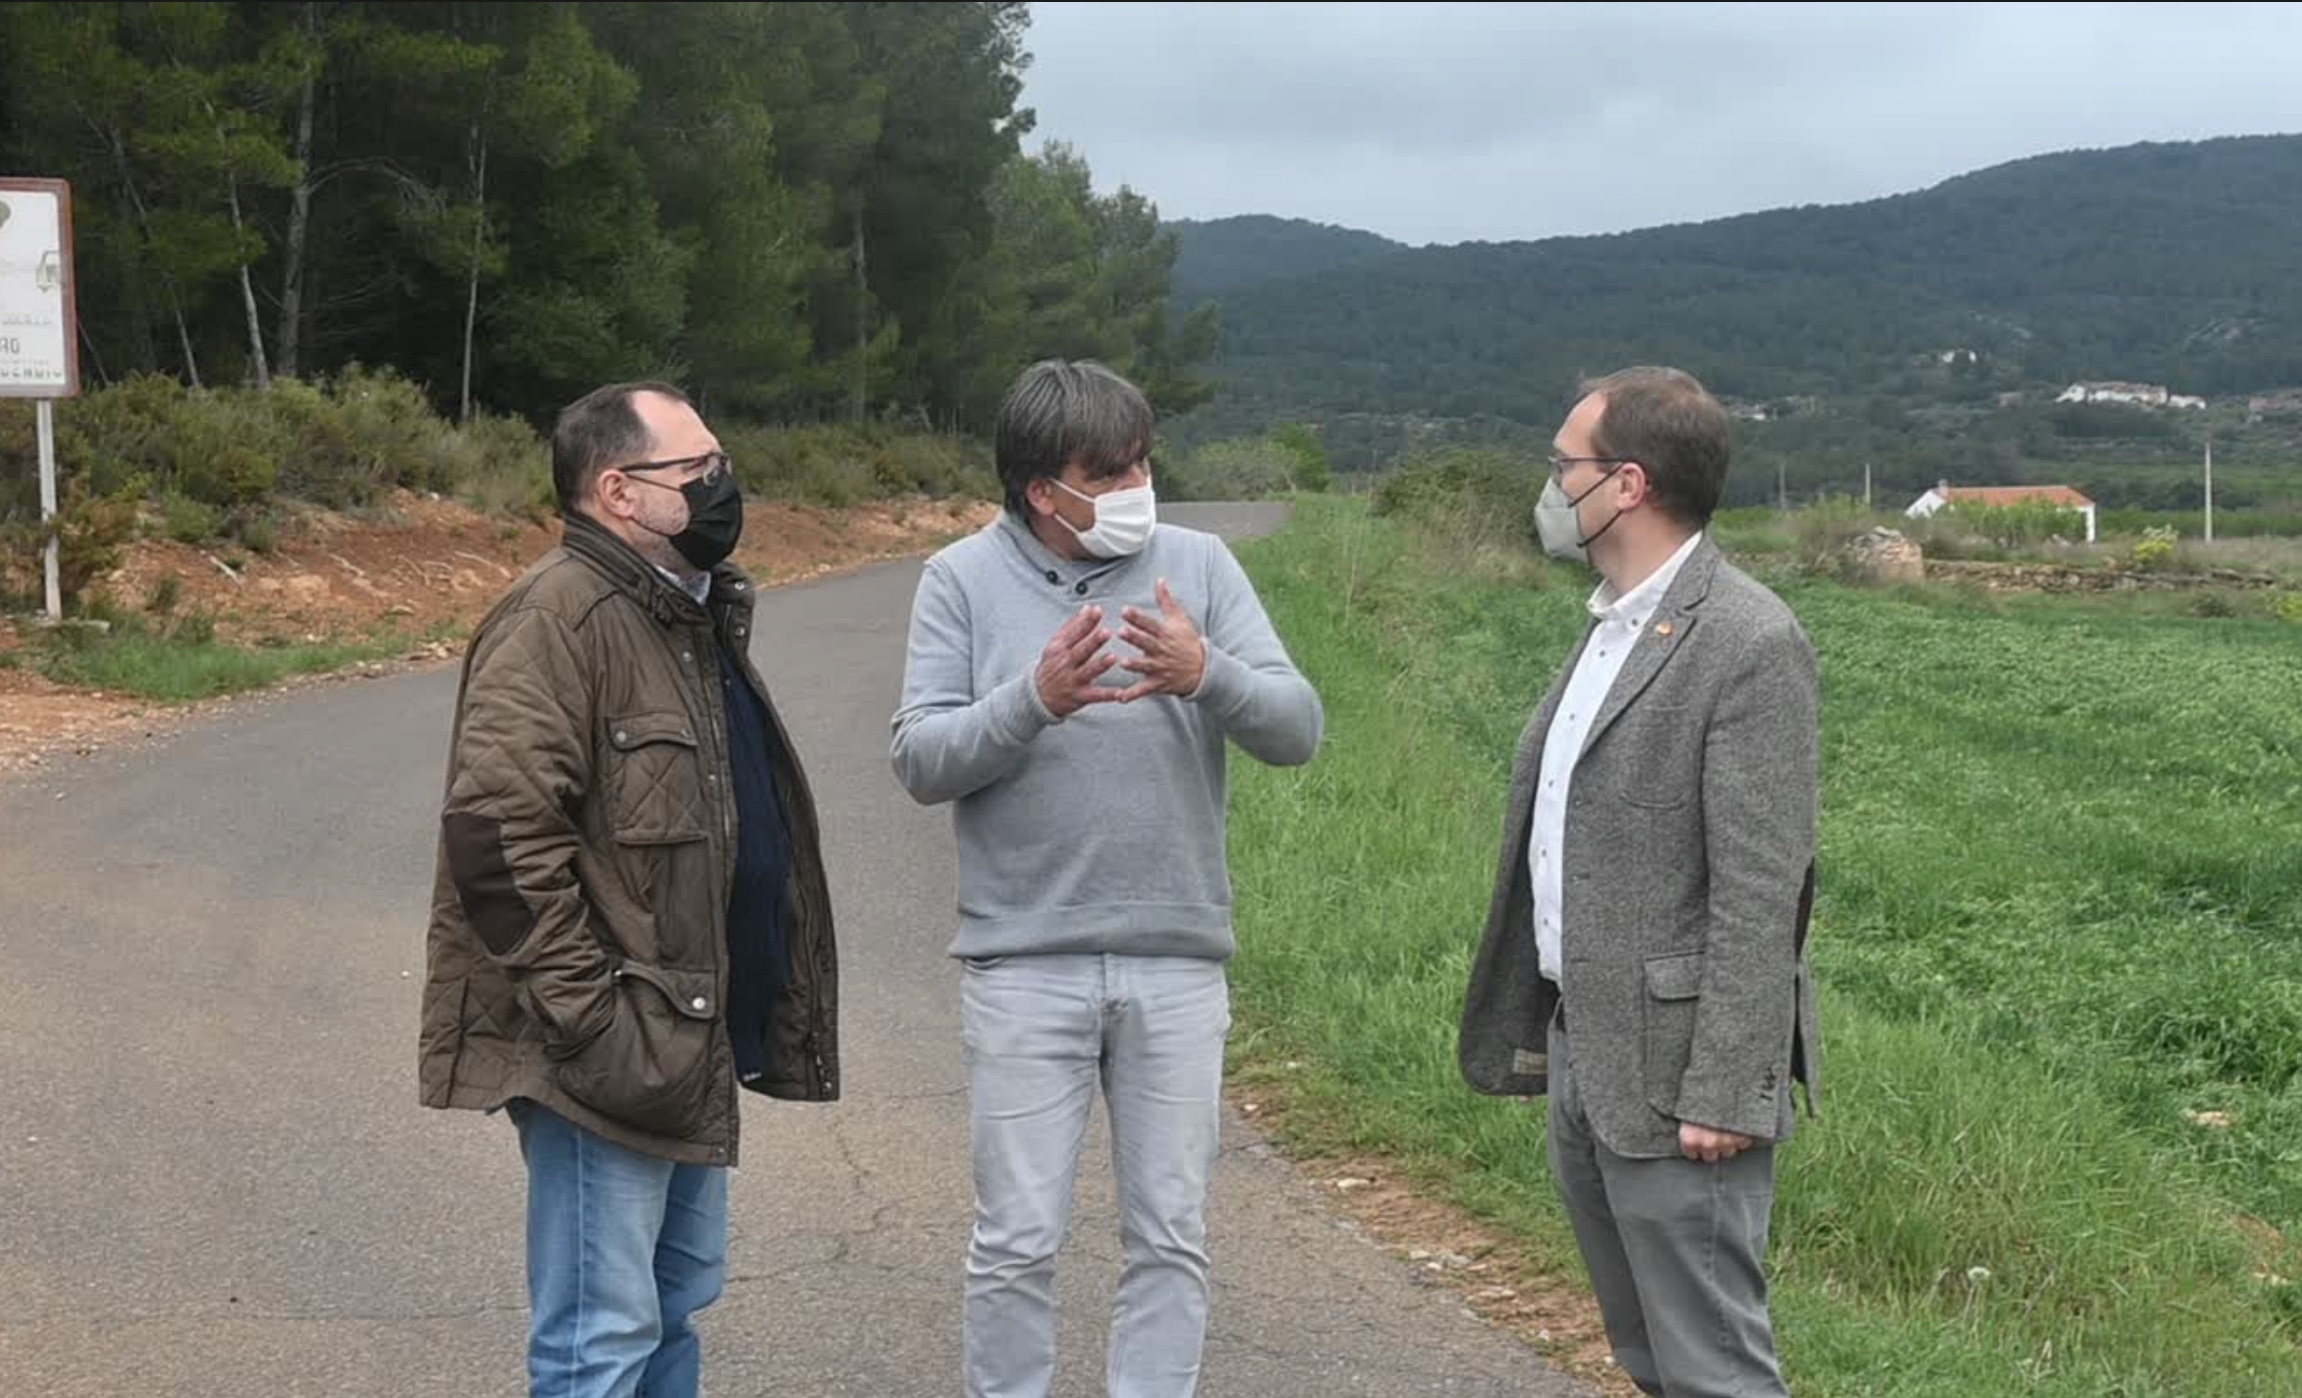 El alcalde de Atzeneta reclama a la Conselleria de Medio Ambiente “acciones concretas” para cambiar el trazado de la MAT